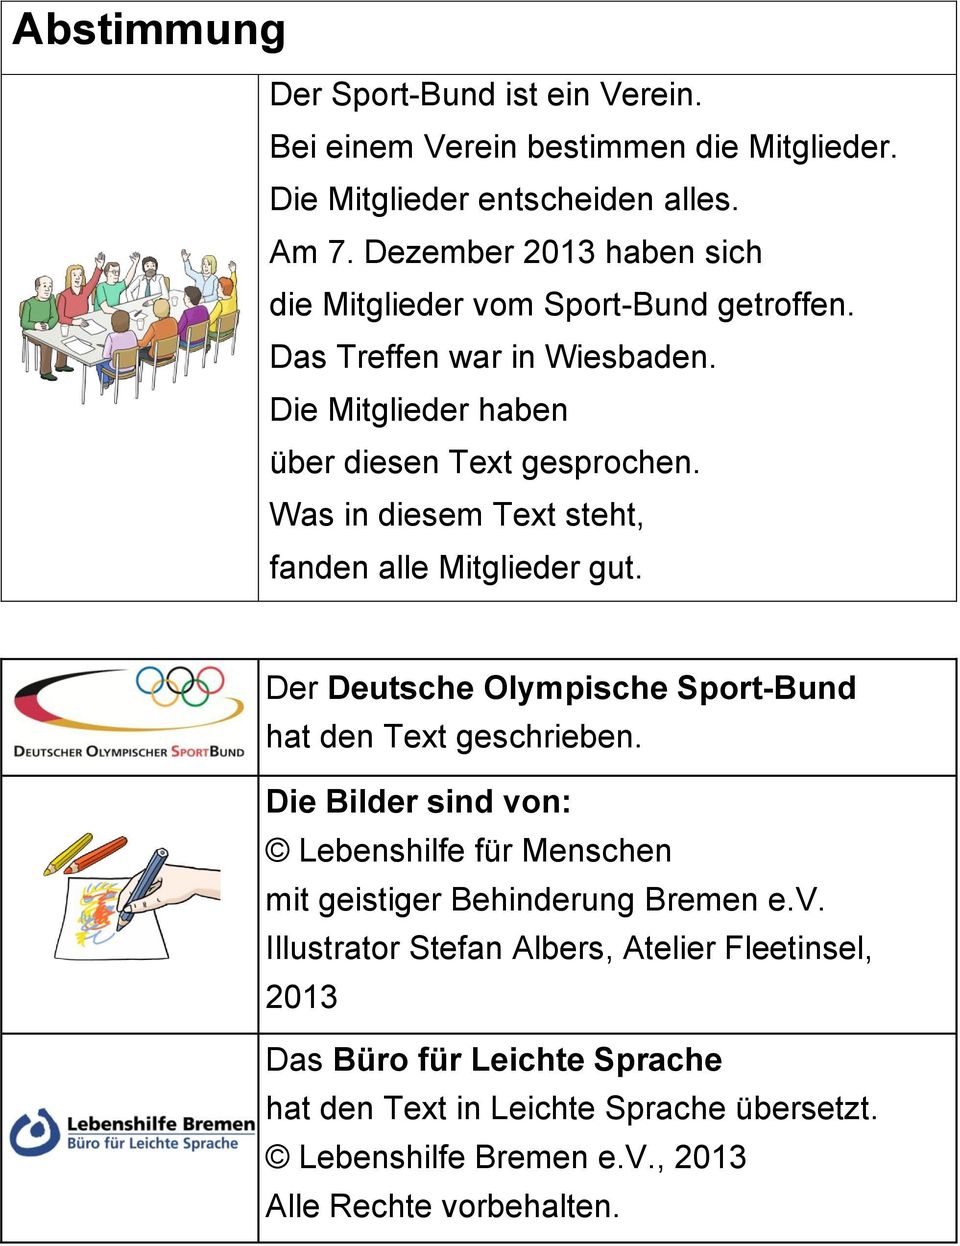 Was in diesem Text steht, fanden alle Mitglieder gut. Der Deutsche Olympische Sport-Bund hat den Text geschrieben.